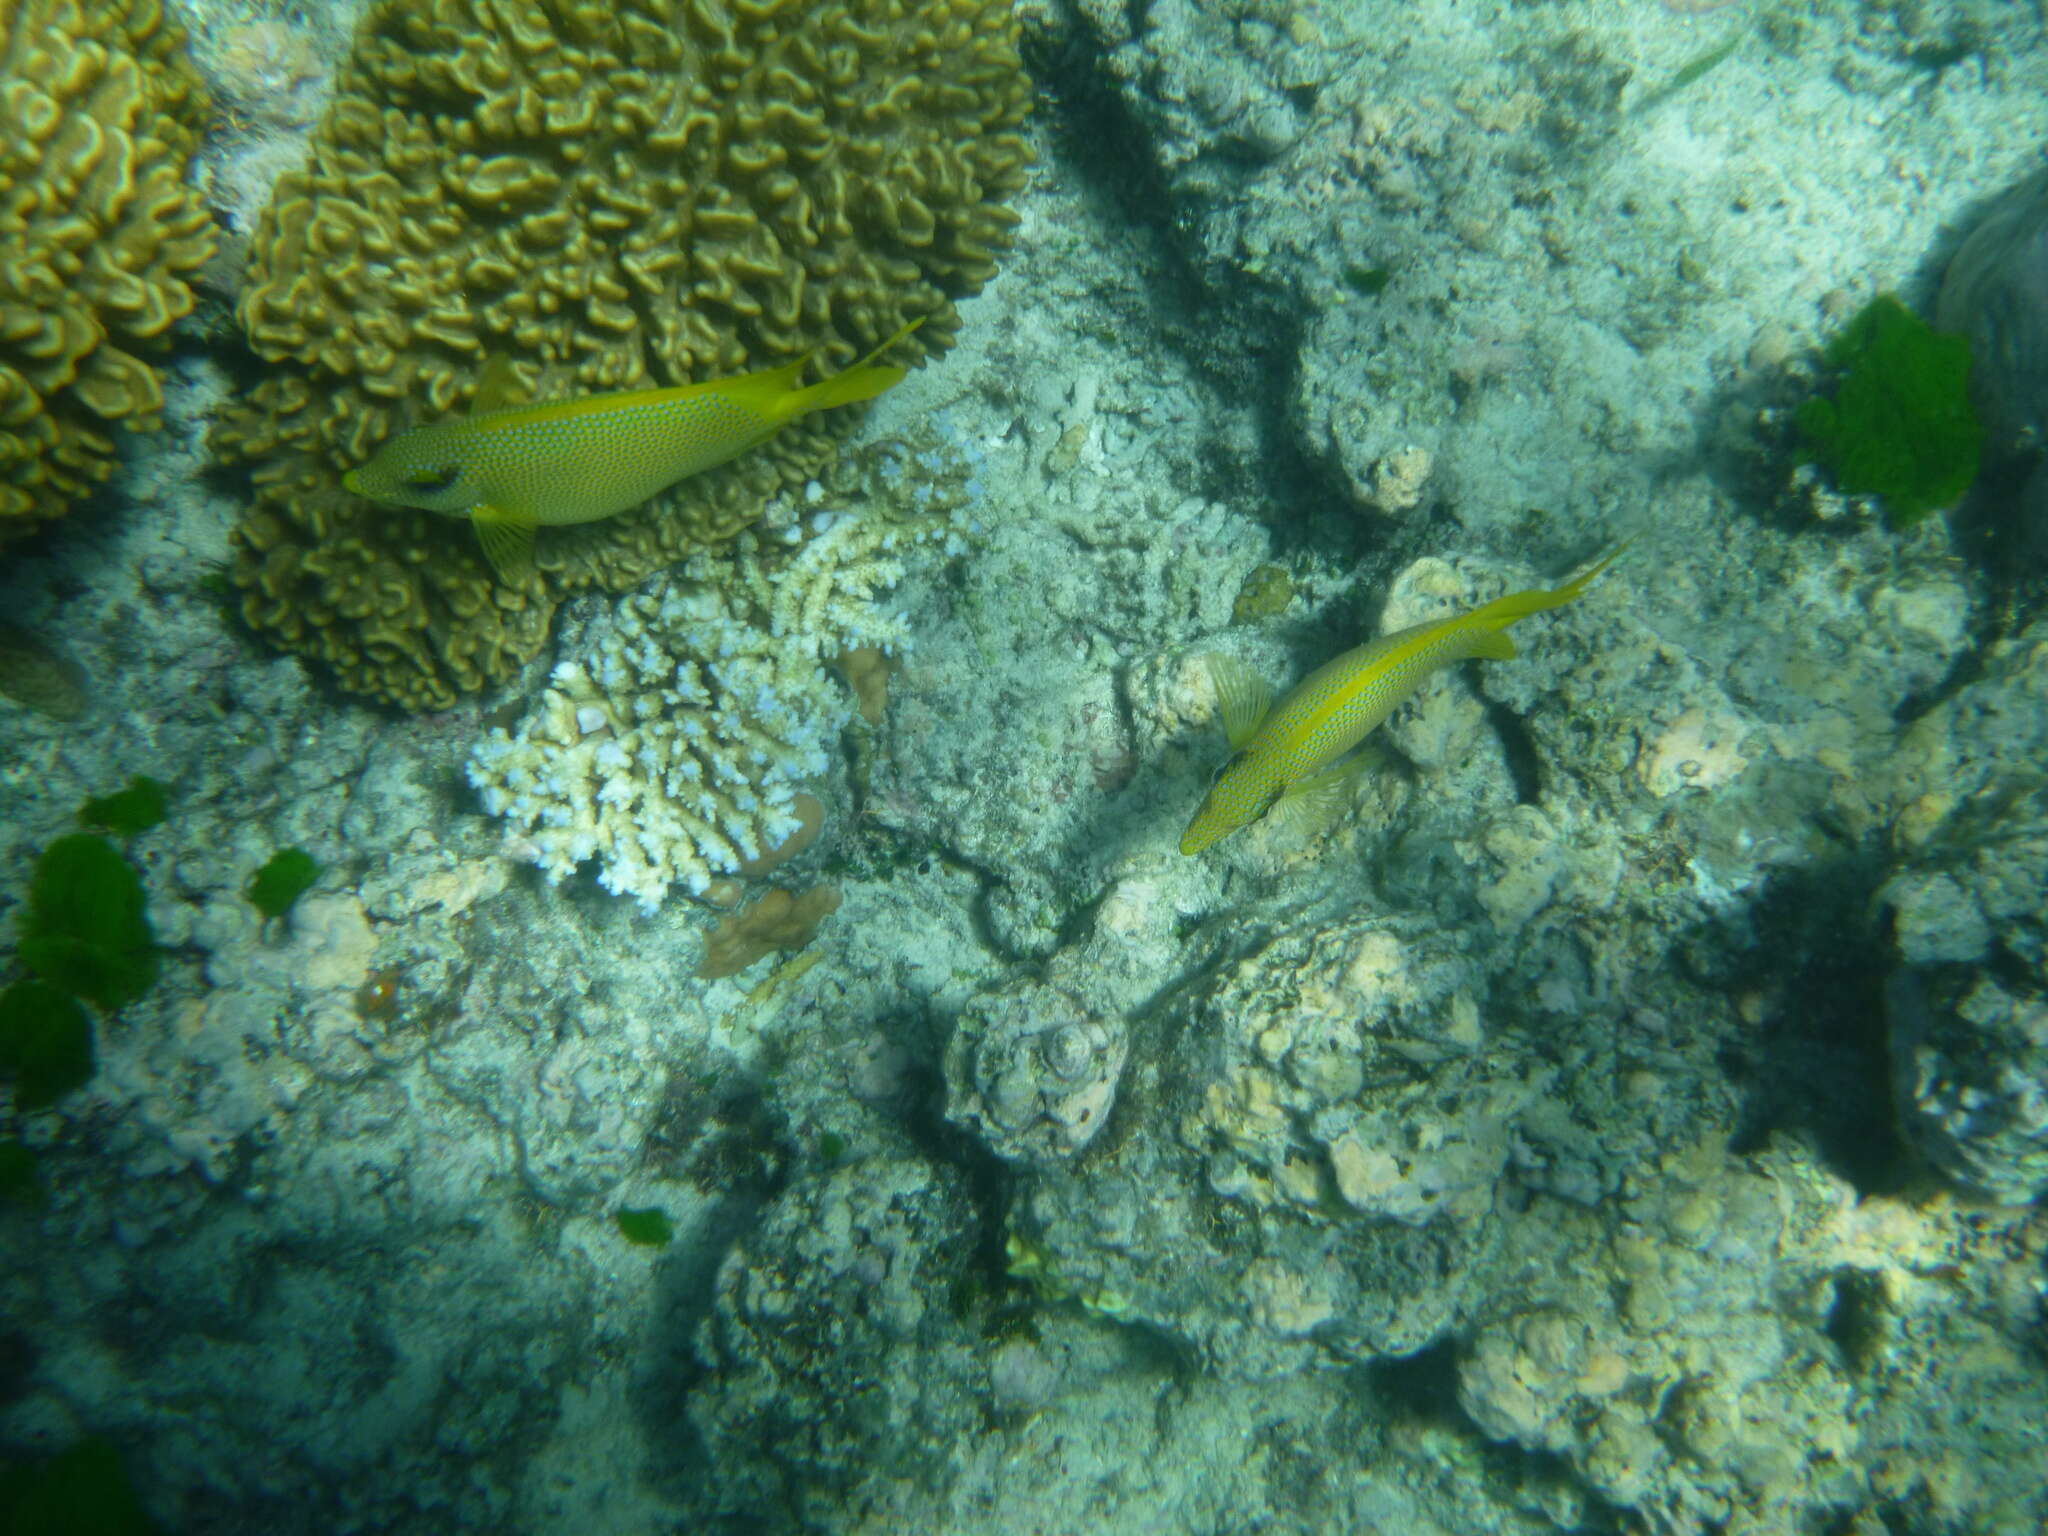 Image of Coral rabbitfish